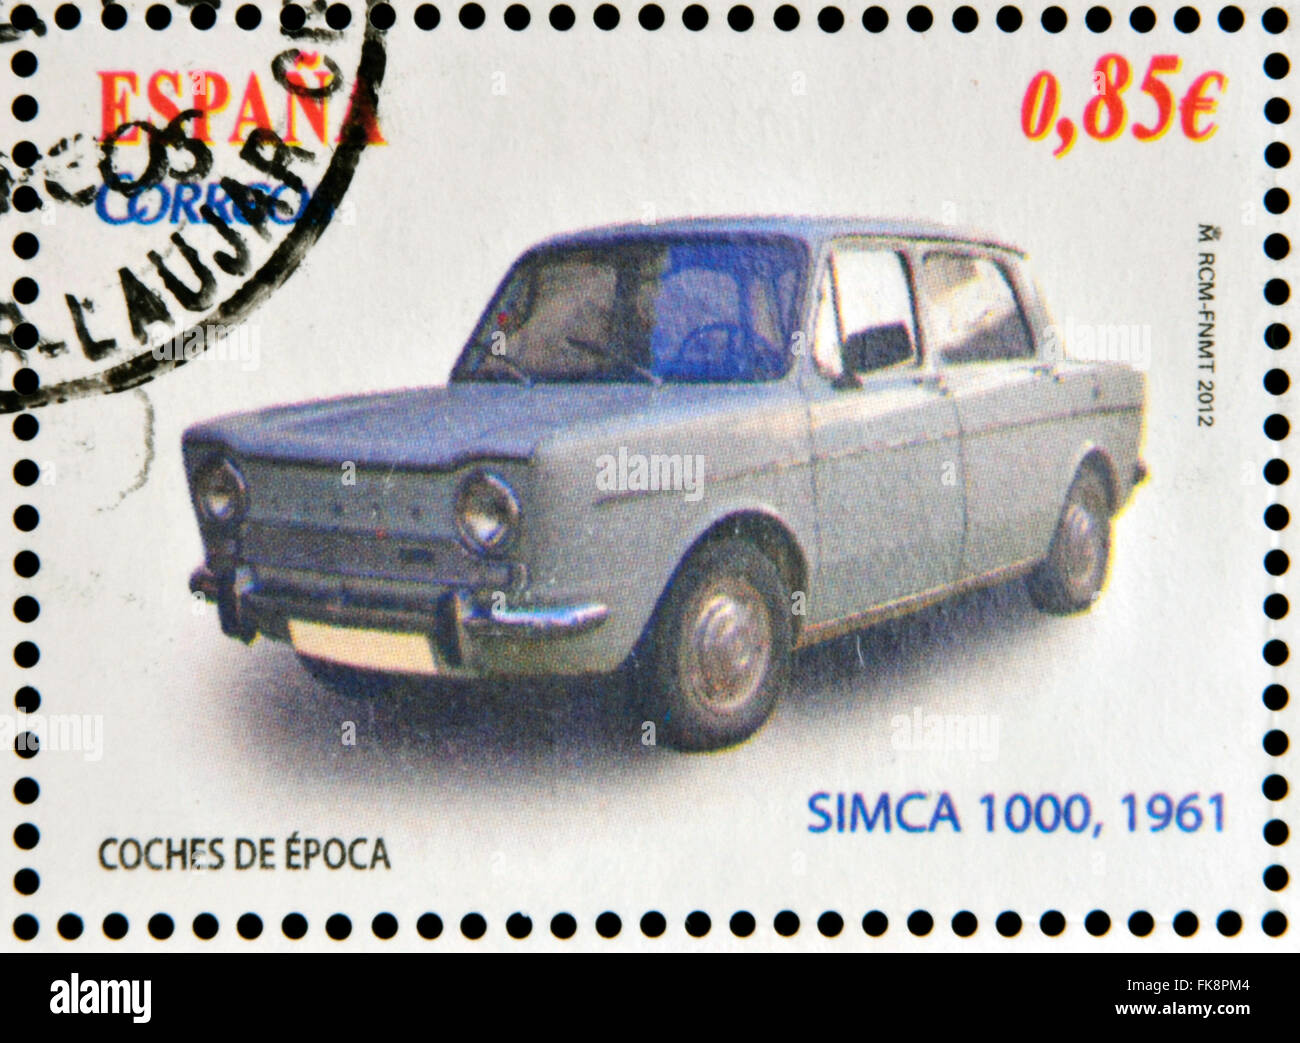 Espagne - circa 2012 : tampons imprimés en Espagne dédié à classic car, spectacles SIMCA 1000, 1961, vers 2012 Banque D'Images